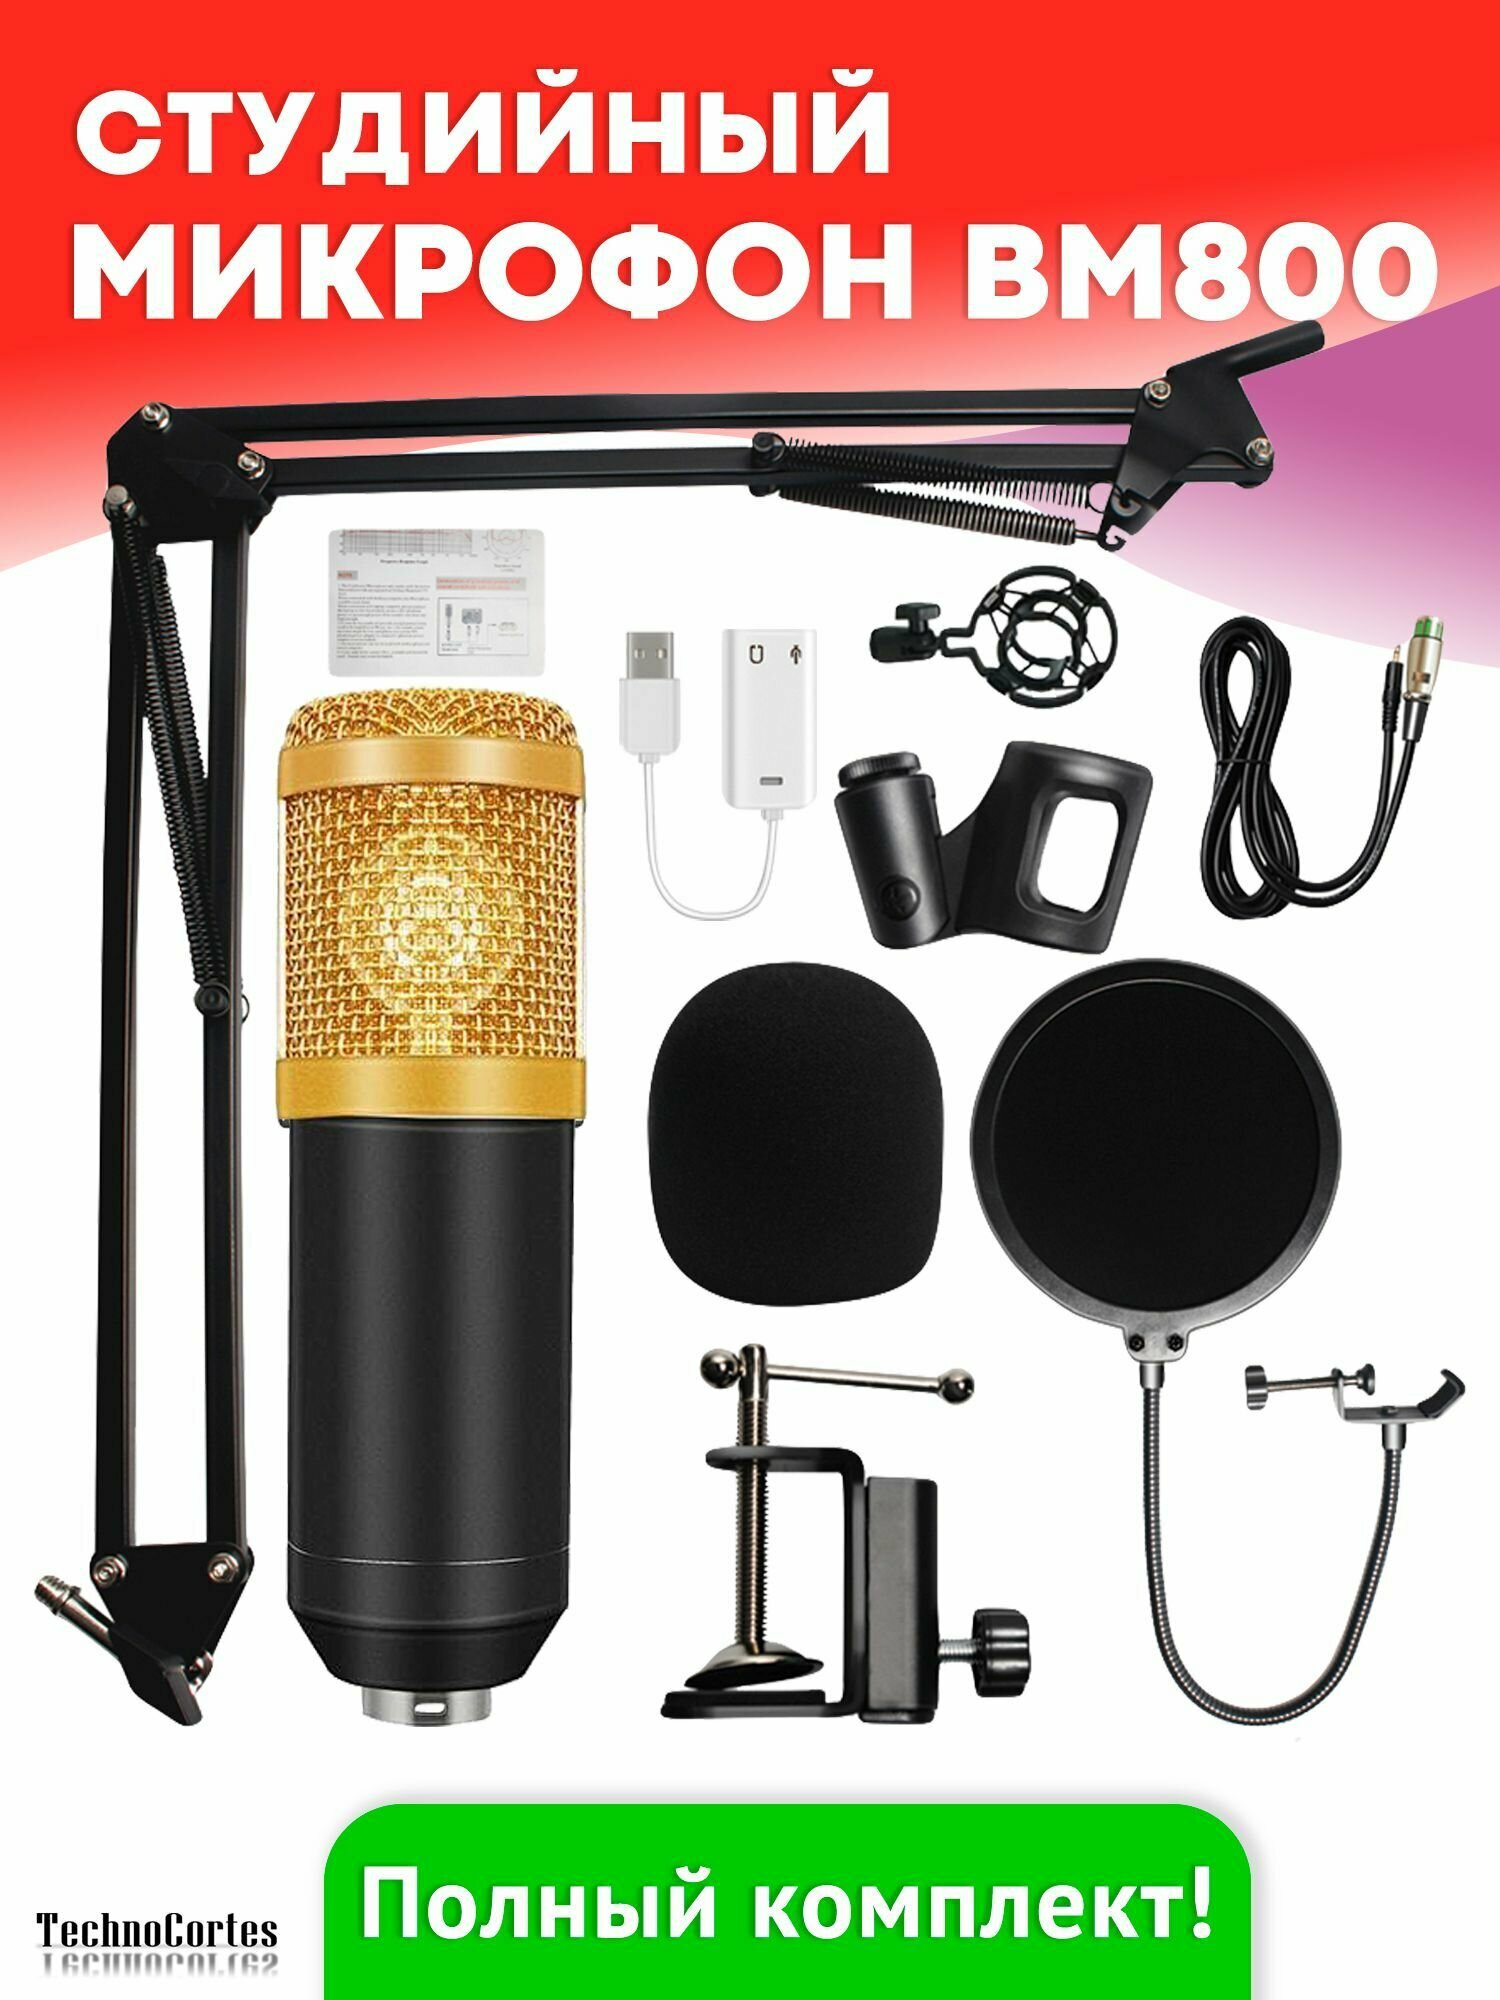 Студийный микрофон BM800 TechnoCortes